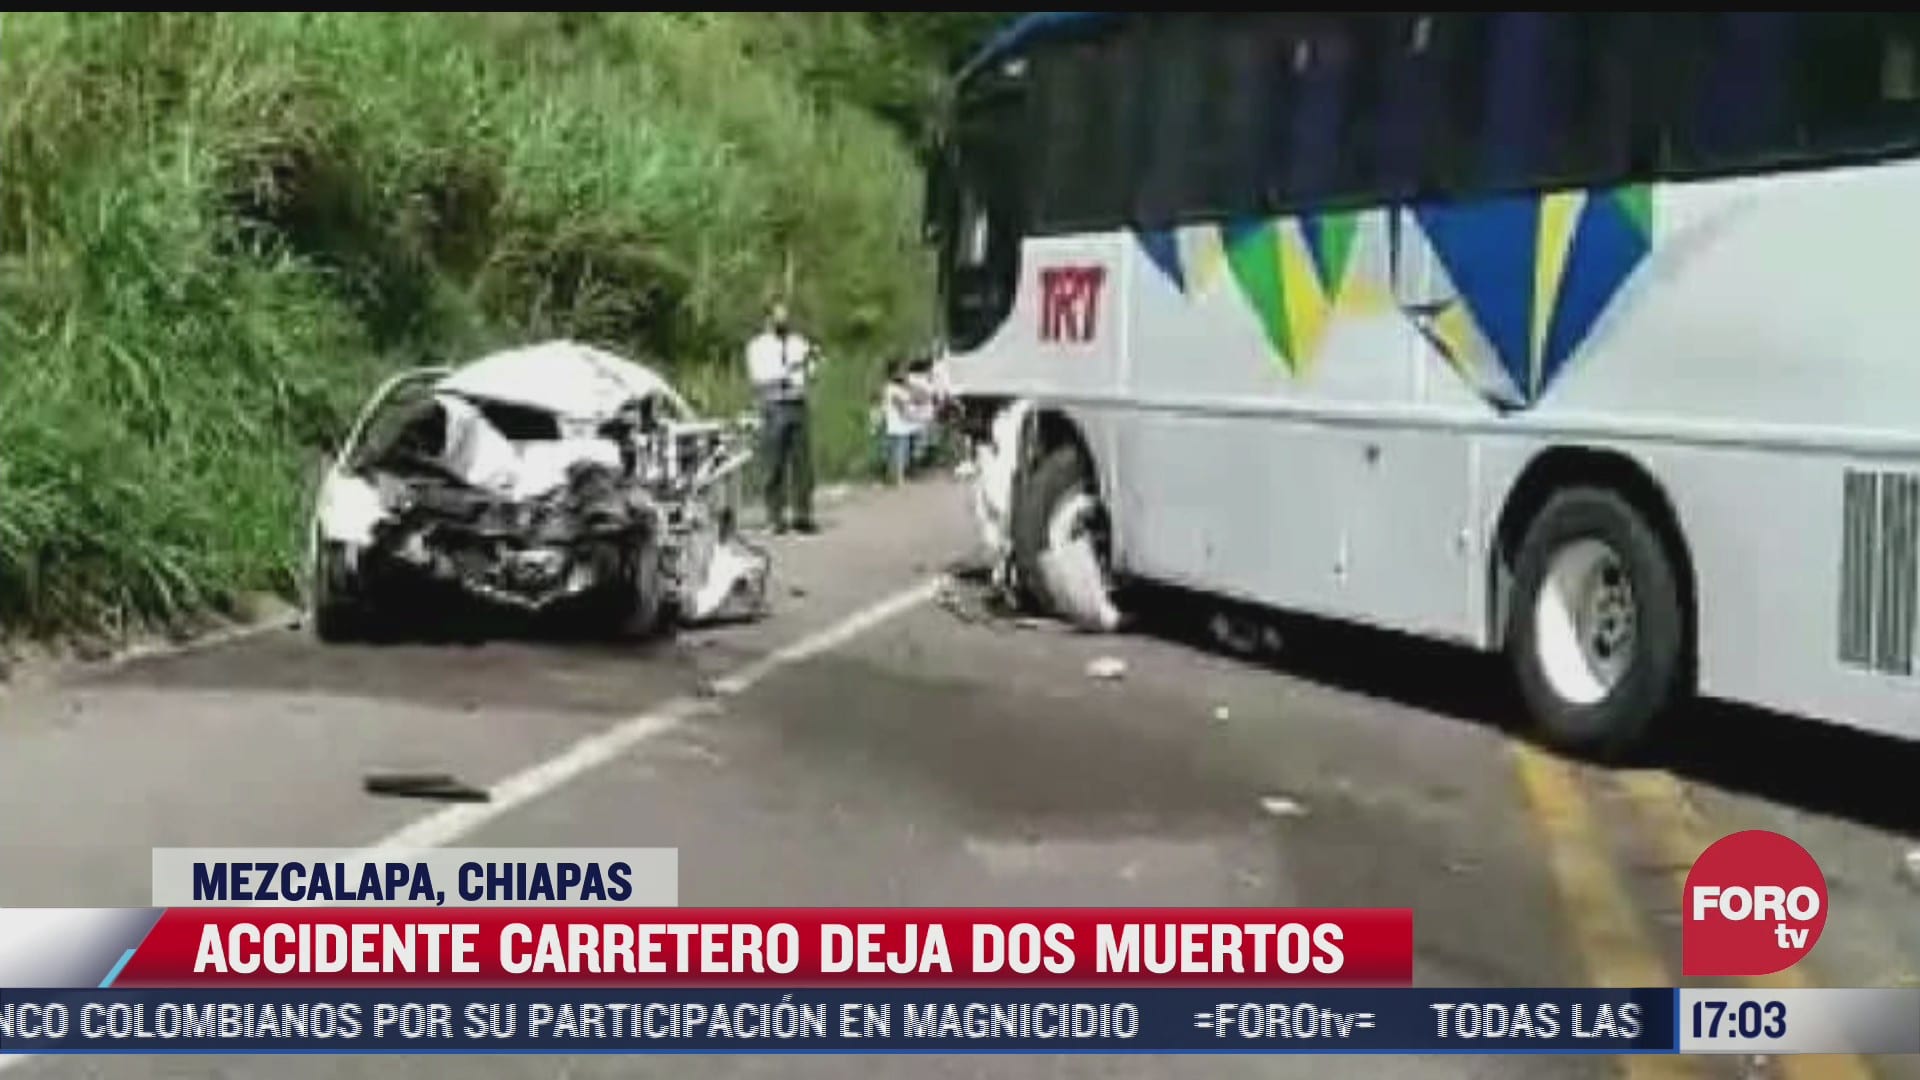 accidente carretero deja 2 muertos en mezcalapa chiapas